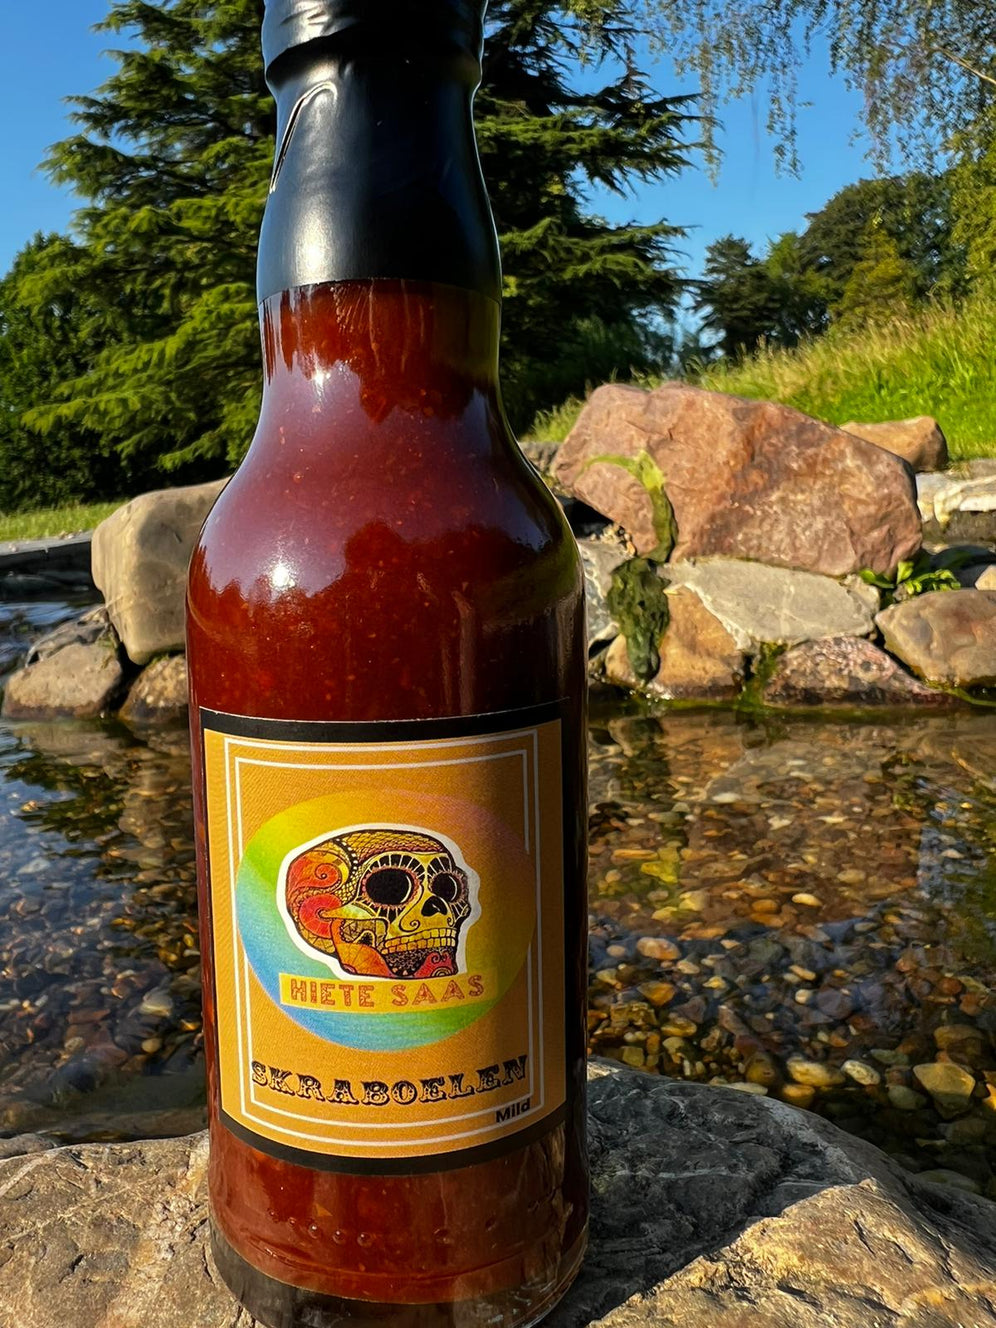 Sauce piquante Skraboelen au chipotle et piment ghost 200ml, bouteille de sauce BBQ épicée en plein air, devant un ruisseau.